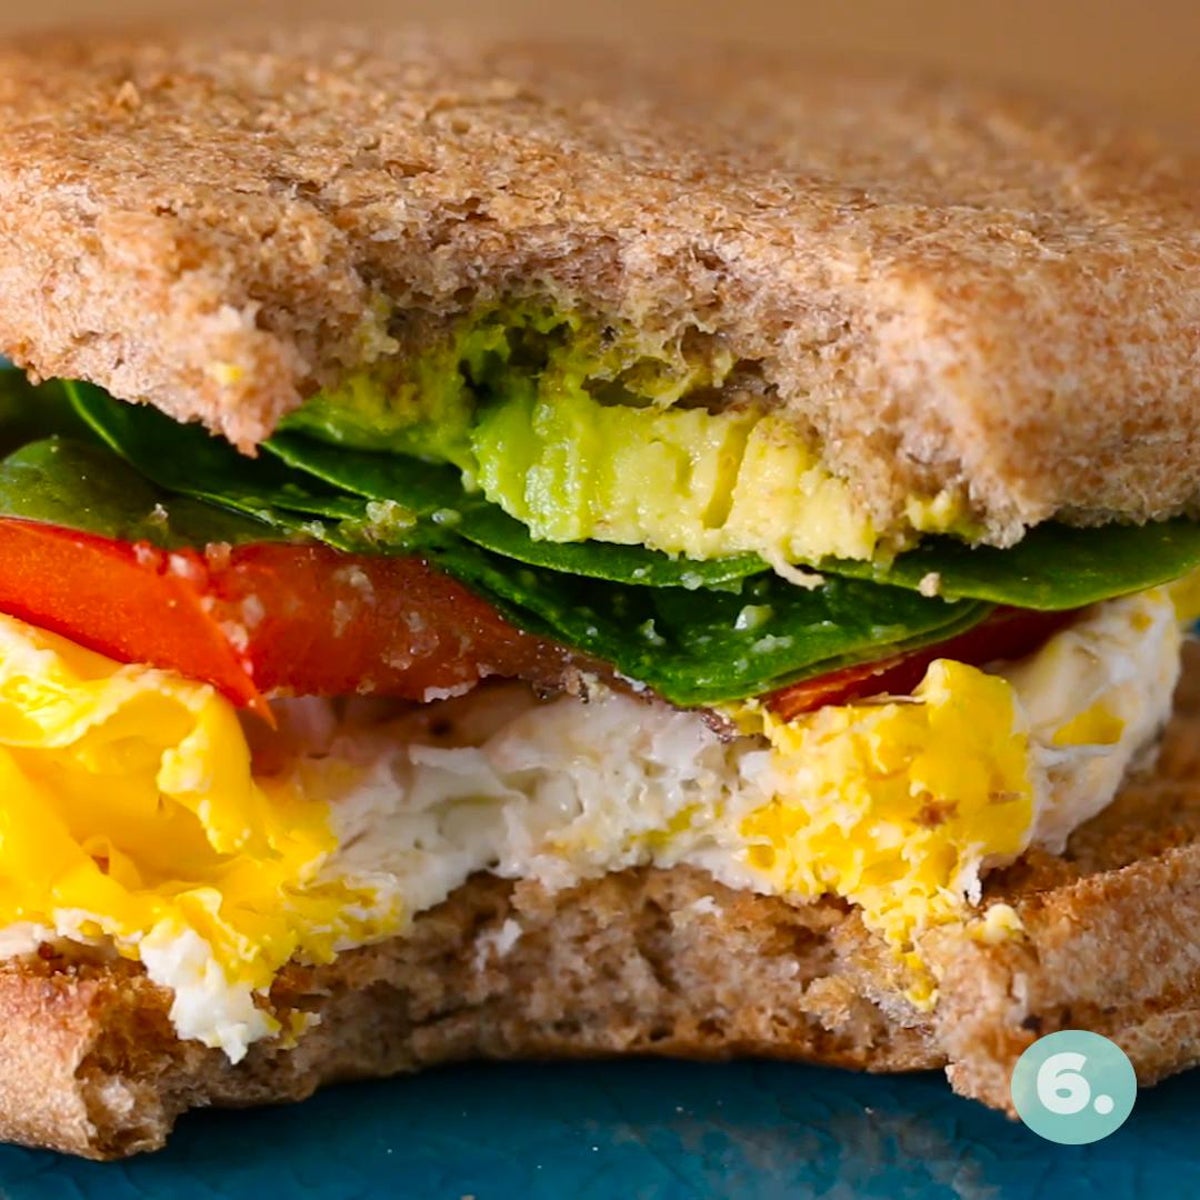 Microwaved Egg Breakfast Sandwich Recipe by Tasty